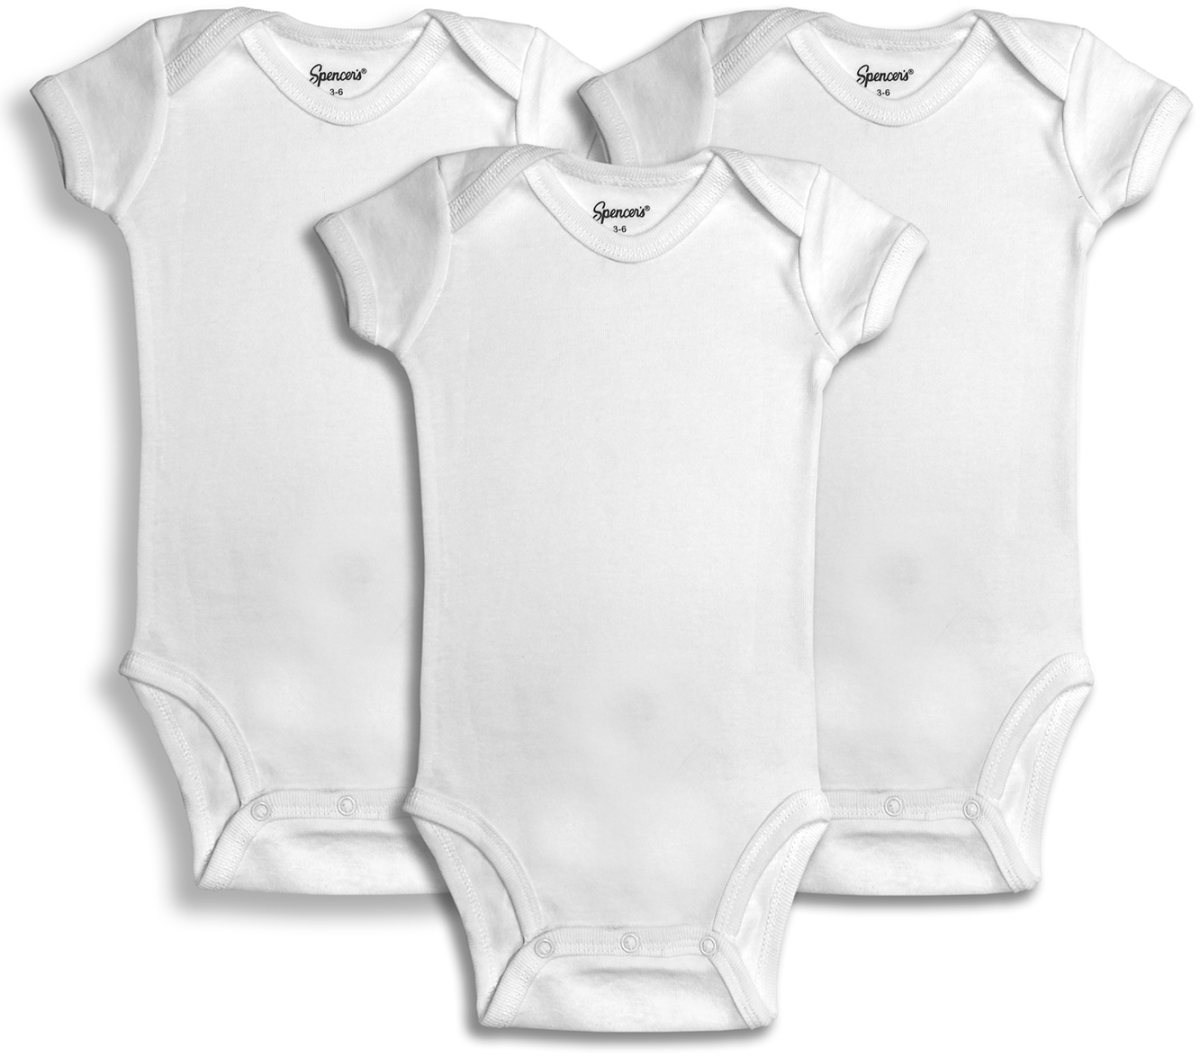 520-3-24 3 Piece White Bodysuits, 24 Months